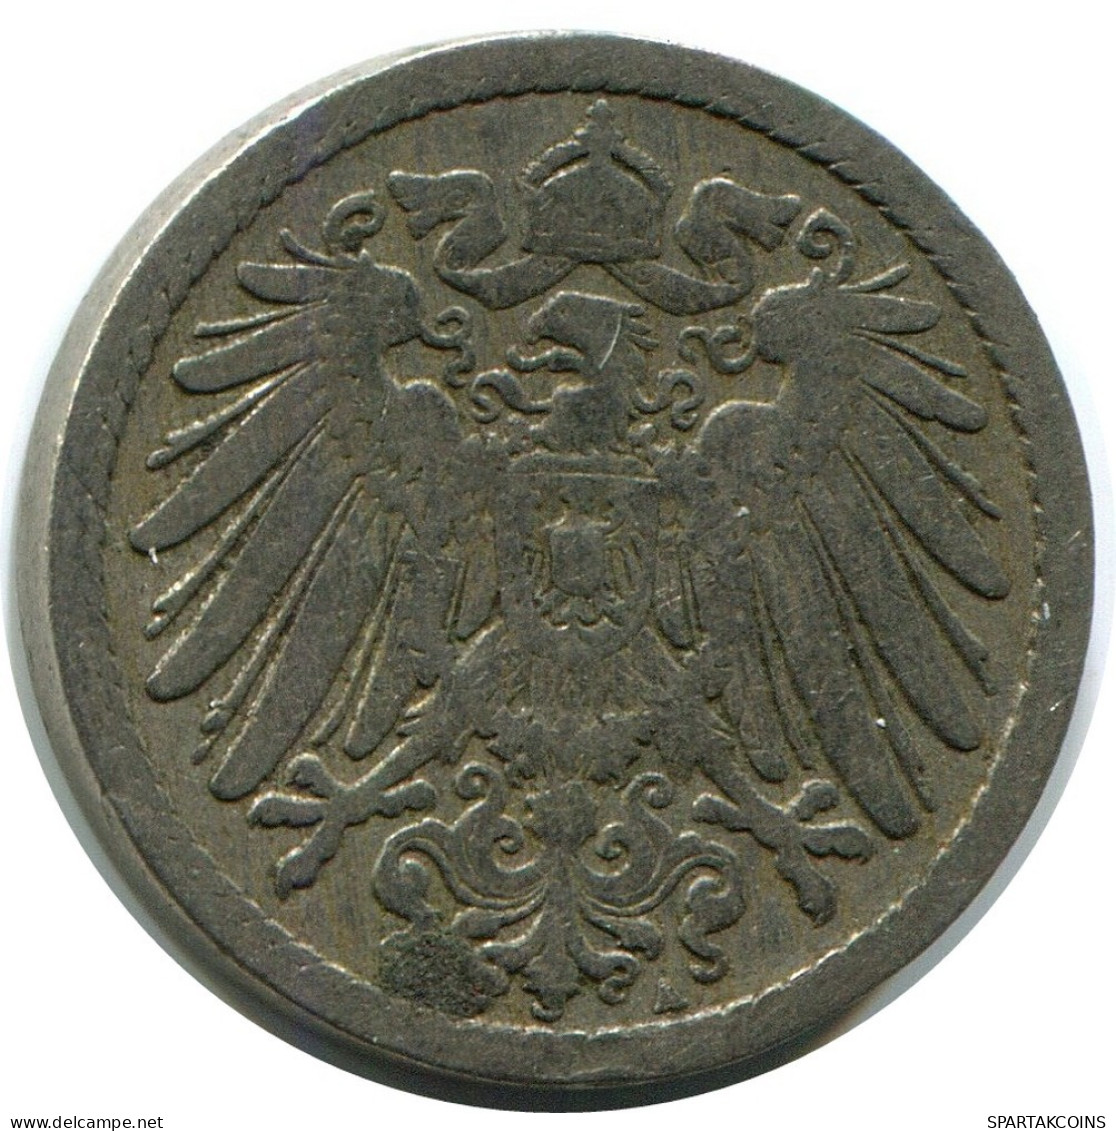 5 PFENNIG 1890 A GERMANY Coin #DB253.U.A - 5 Pfennig